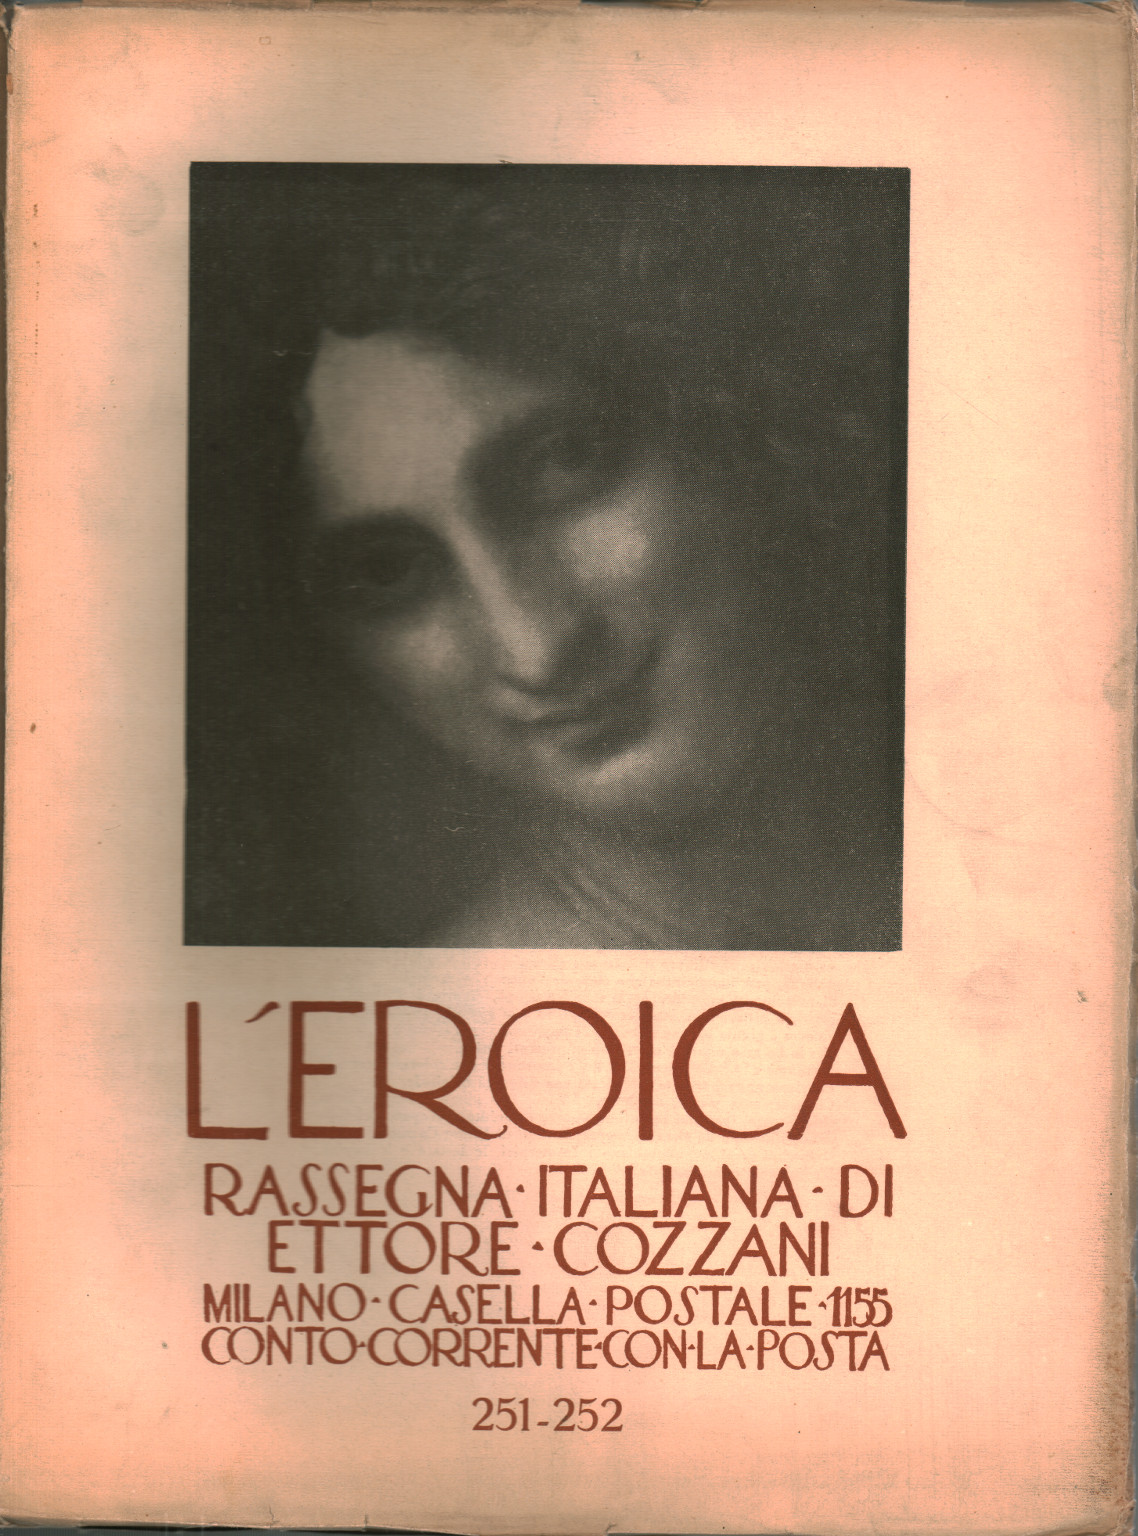 La heroica. Reseña italiana di Ettore Cozzani. Ann, s.una.